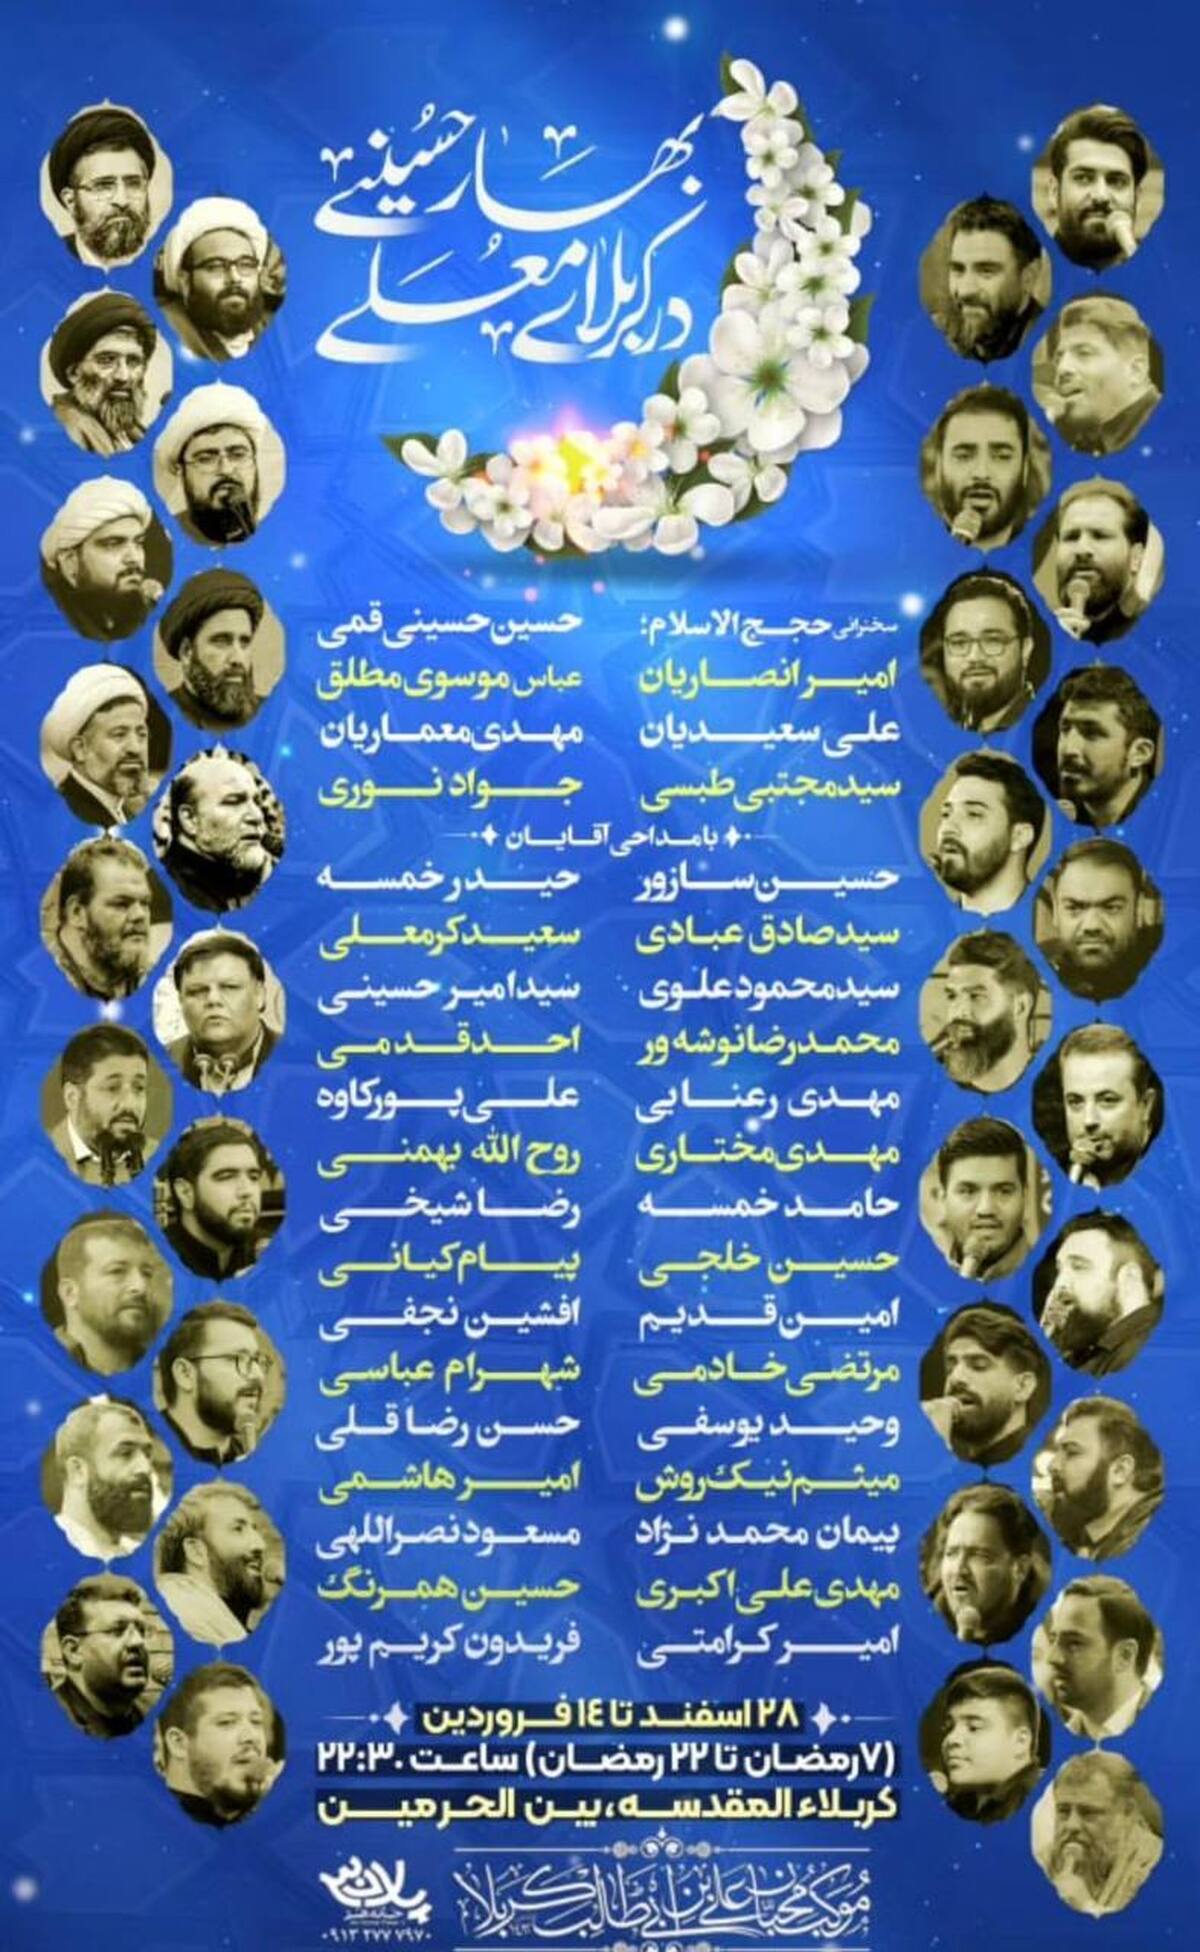 بهار حسینی در کربلا با حضور ۳۵ مداح و سخنران ایرانی